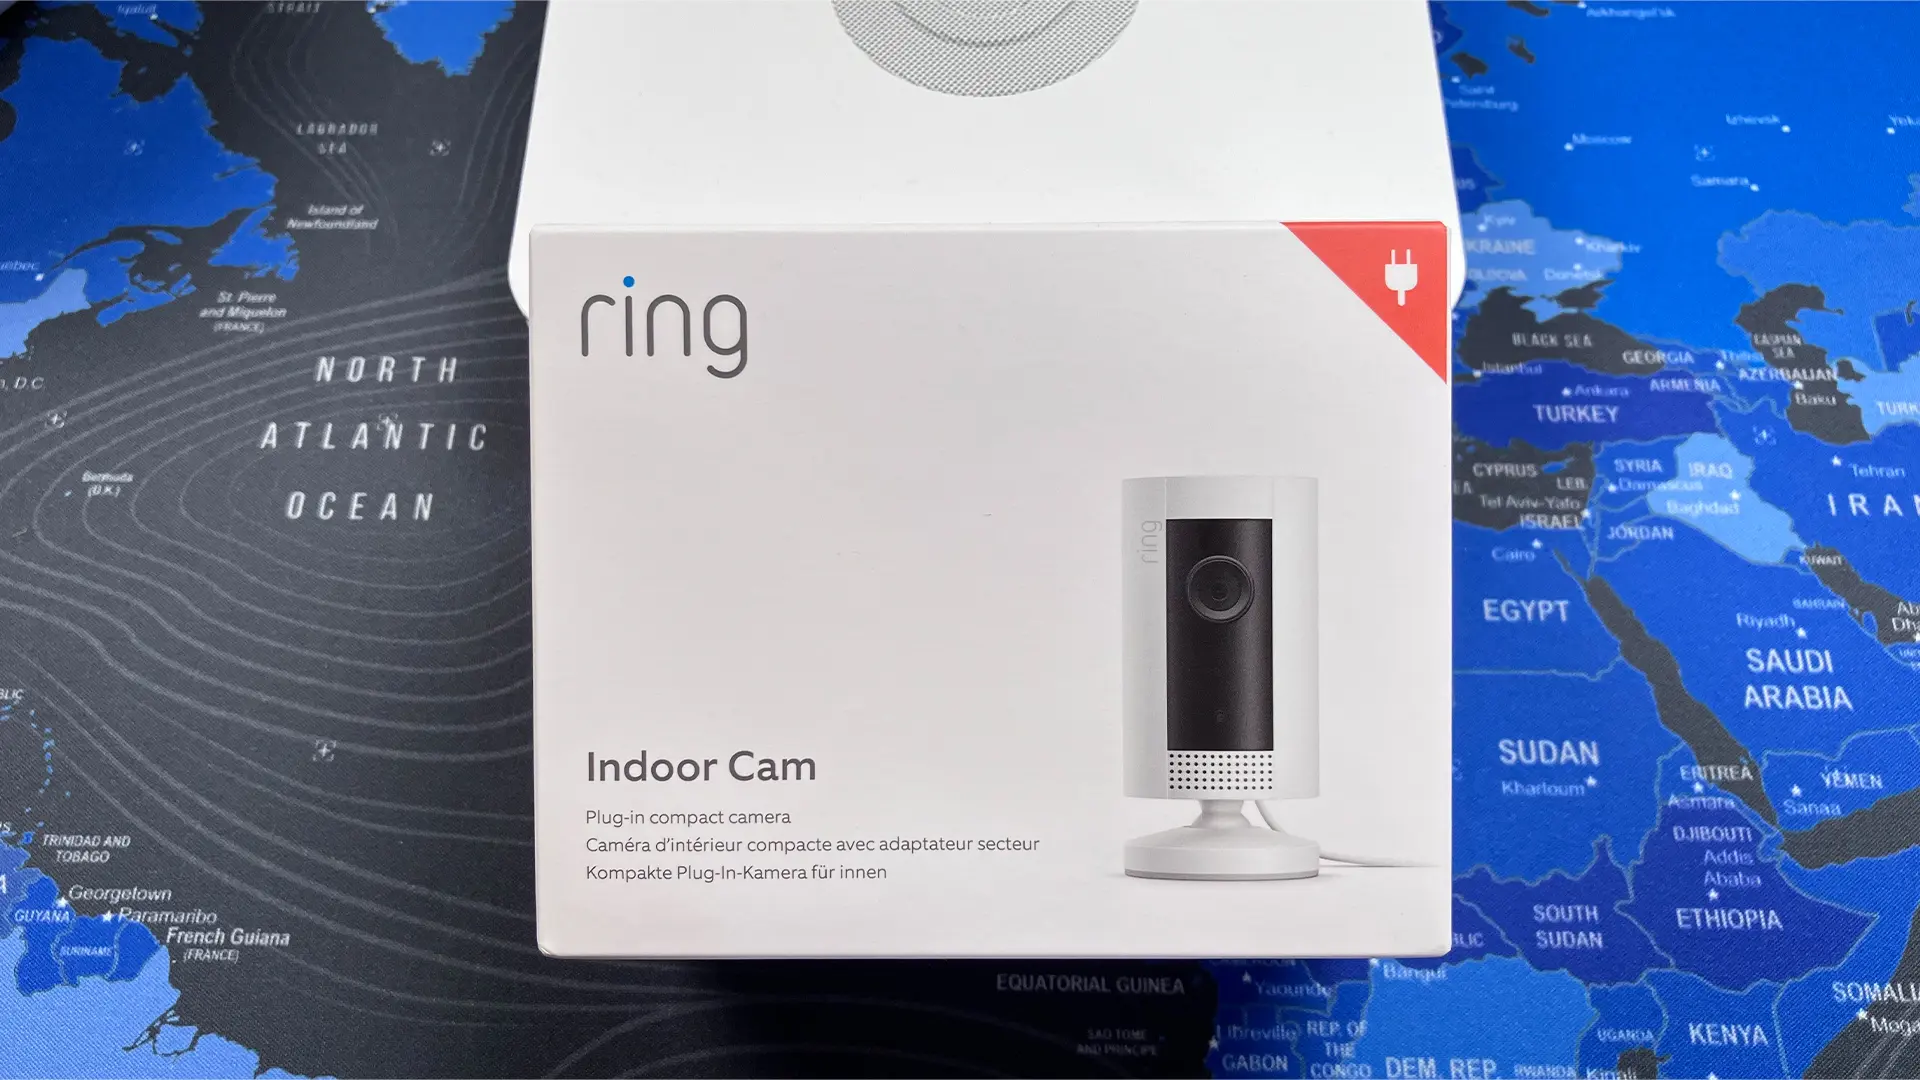 Protege tu hogar y familia con la cámara de seguridad Ring Indoor Cam